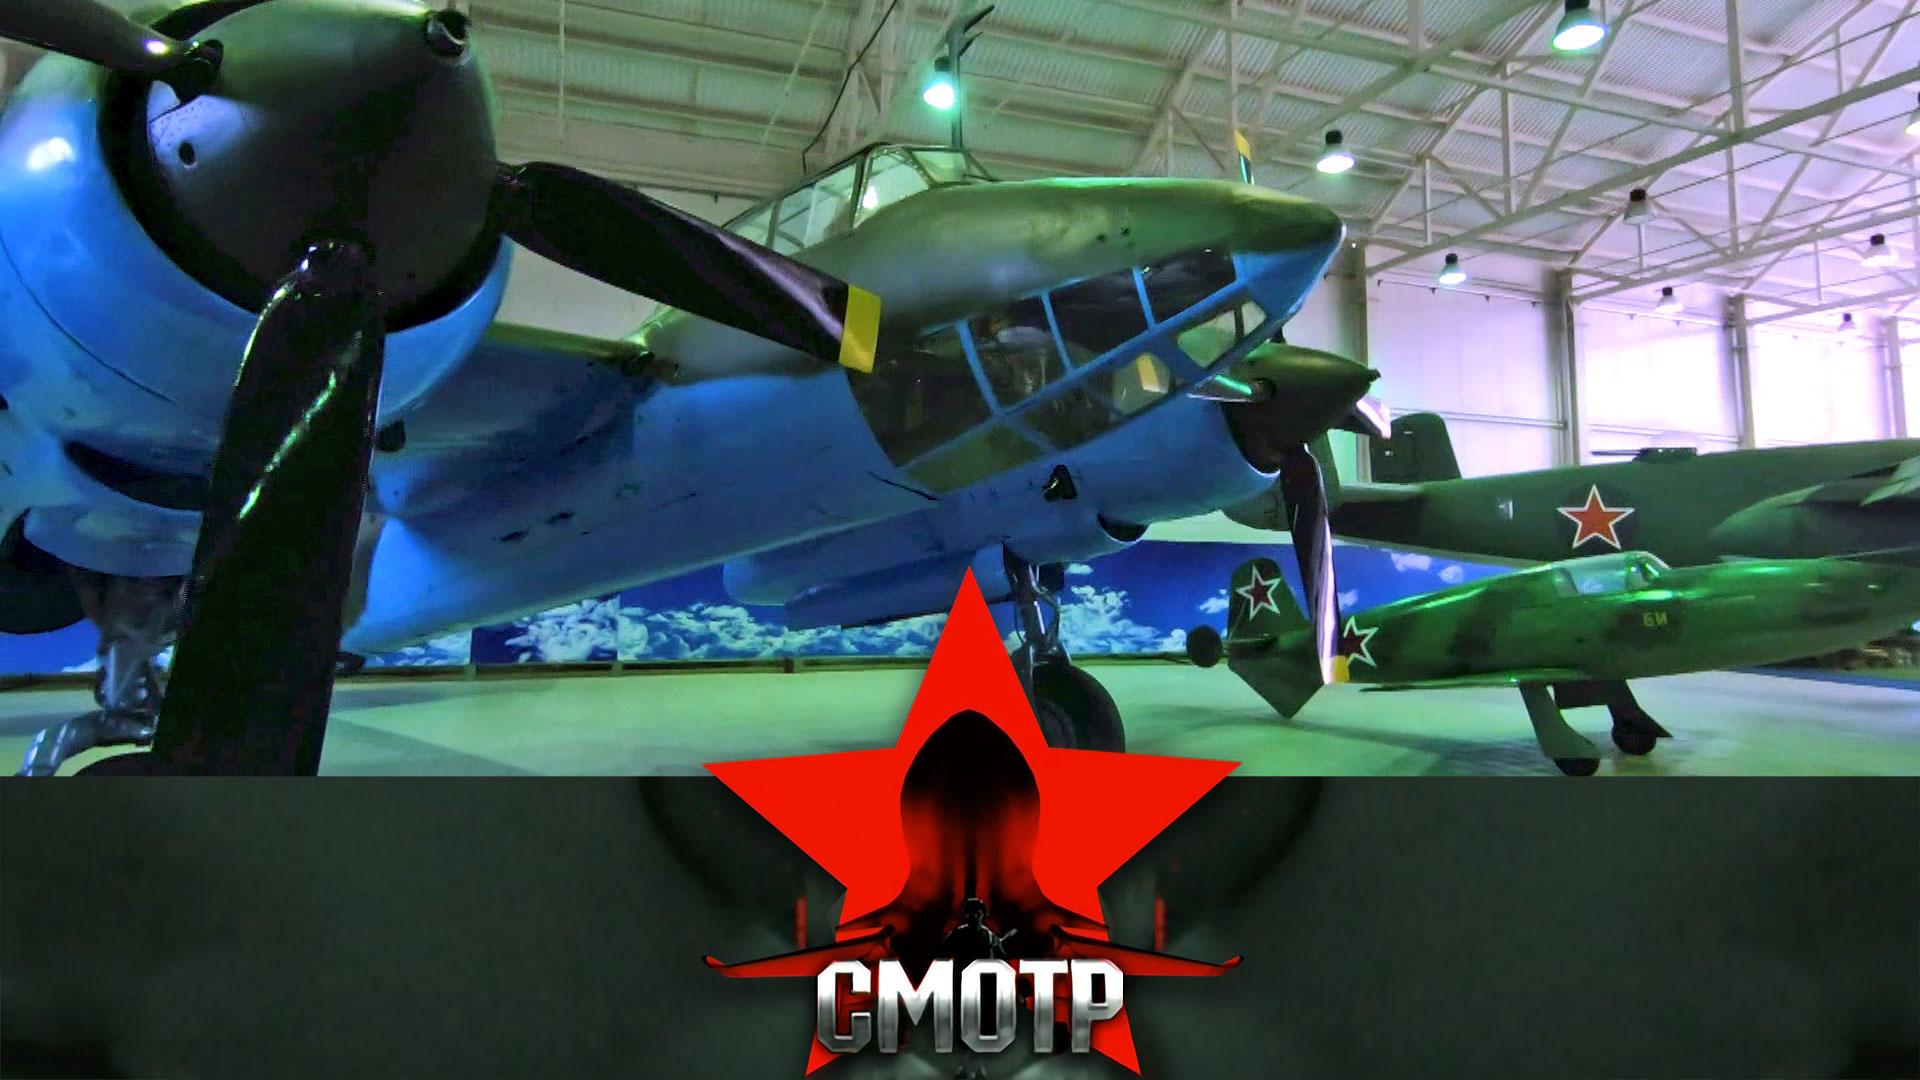 От махолета до сверхзвука: вся история авиации в Центральном музее ВВС | «Смотр»